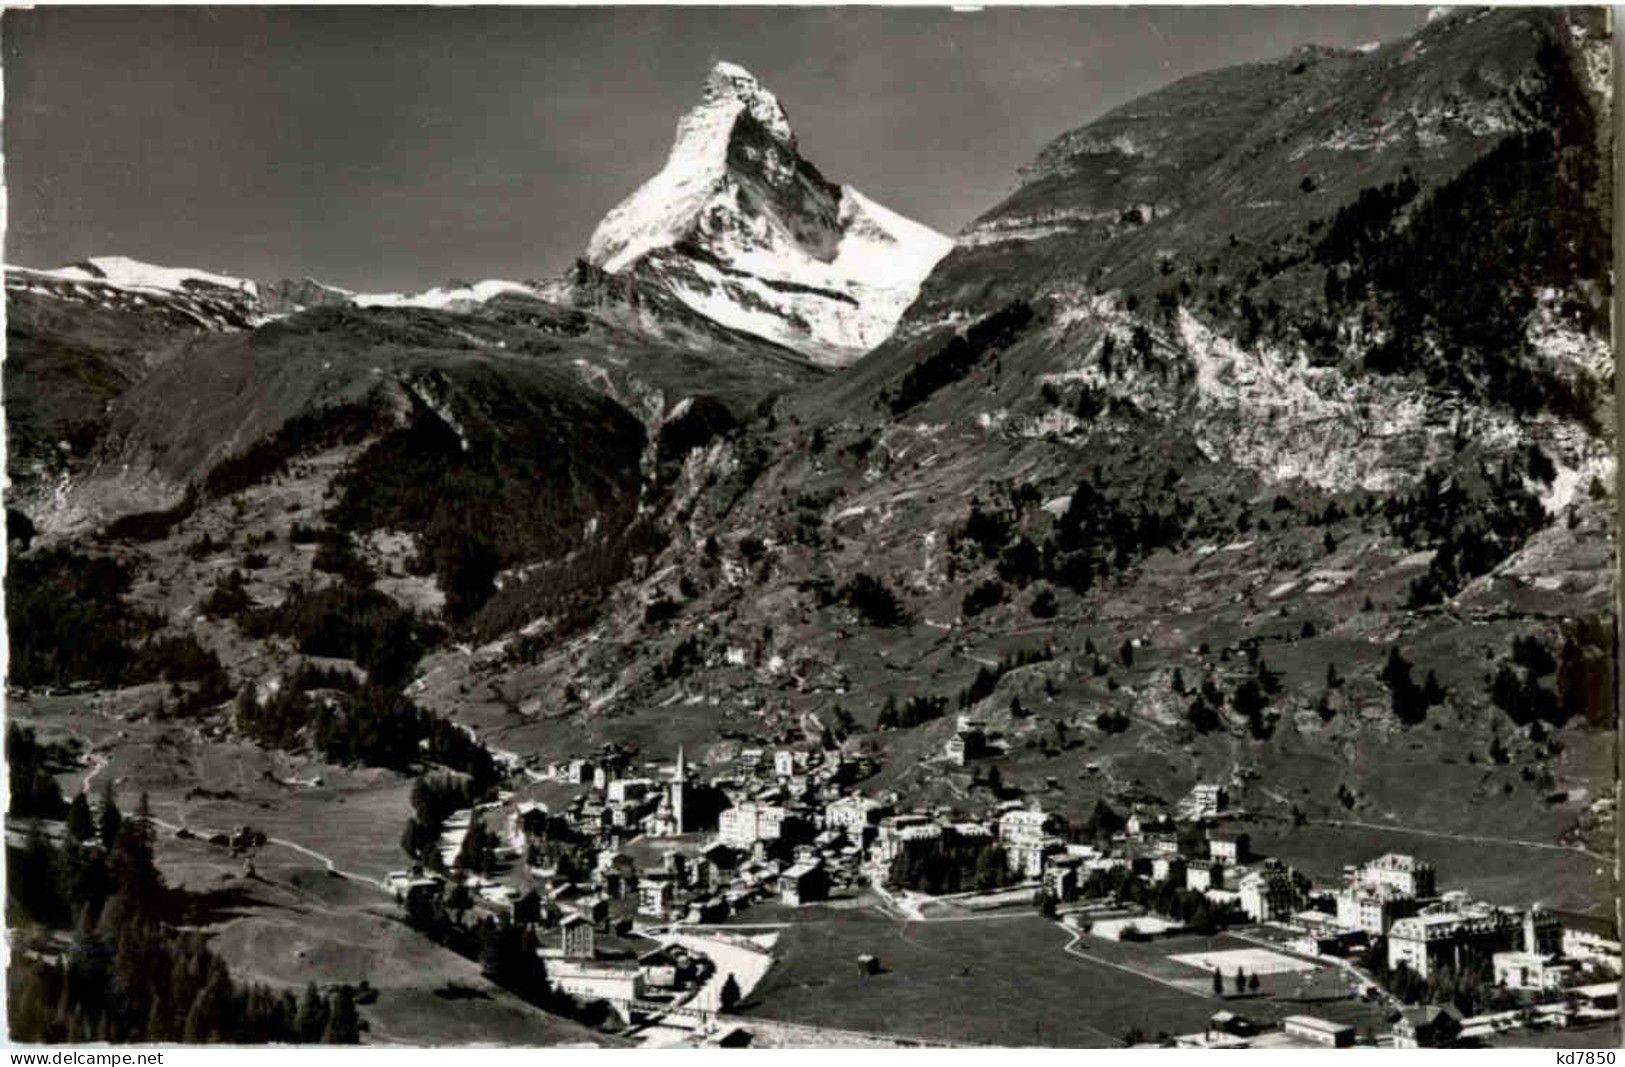 Zermatt - Zermatt